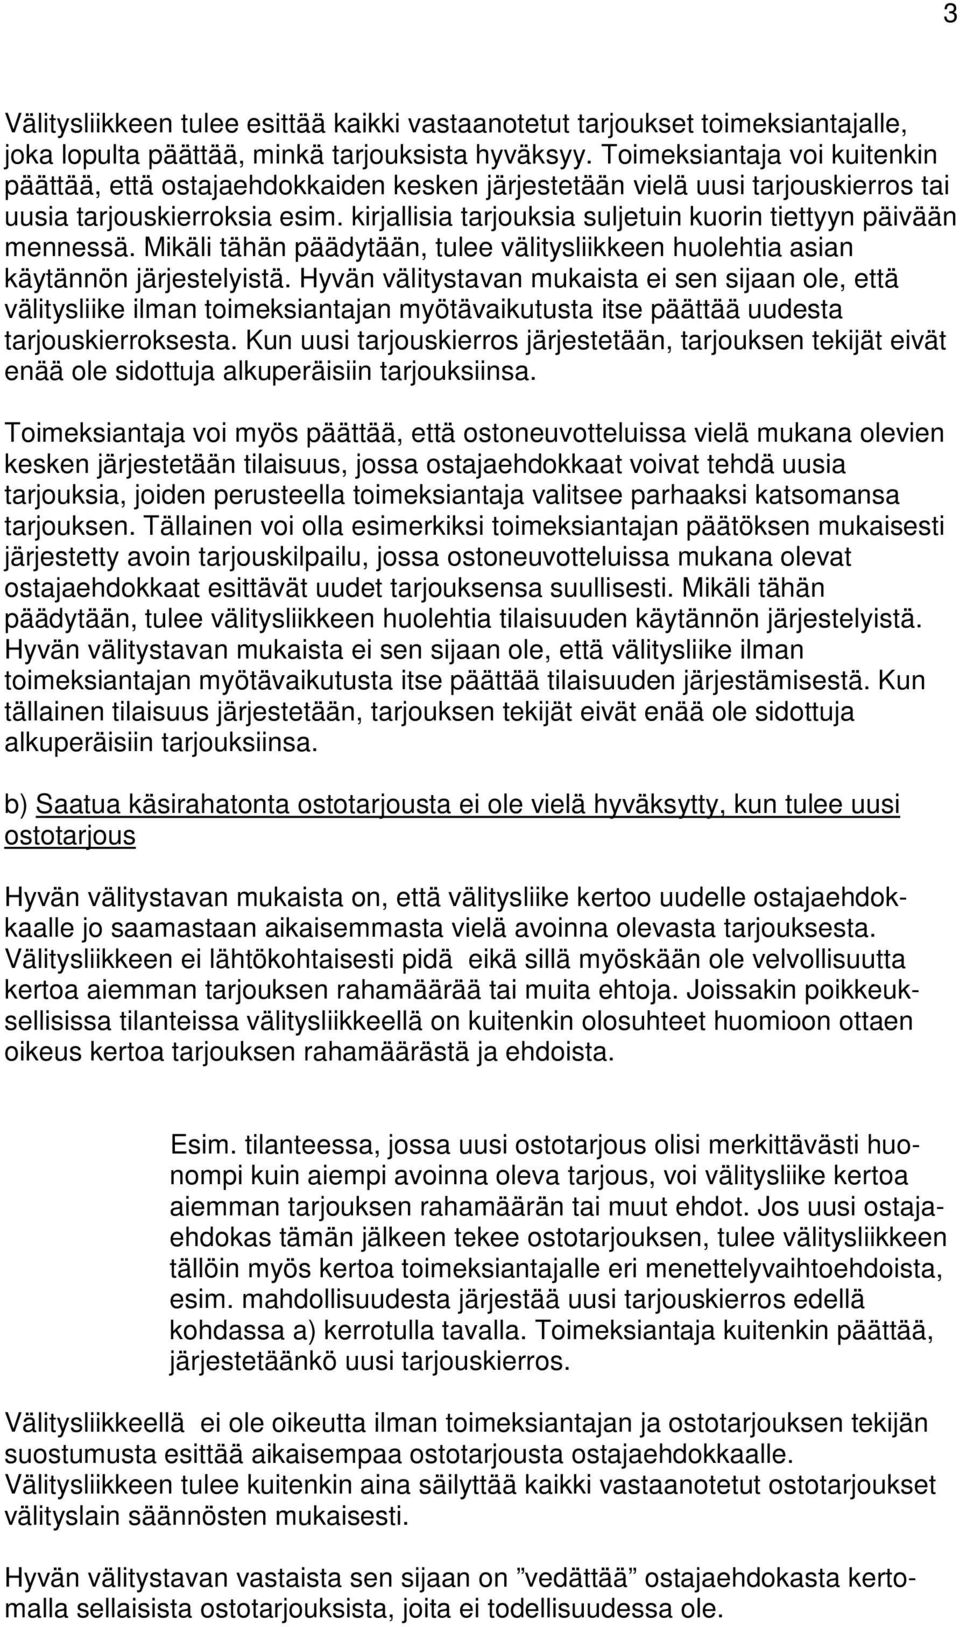 OHJE HYVÄSTÄ VÄLITYSTAVASTA - PDF Ilmainen lataus